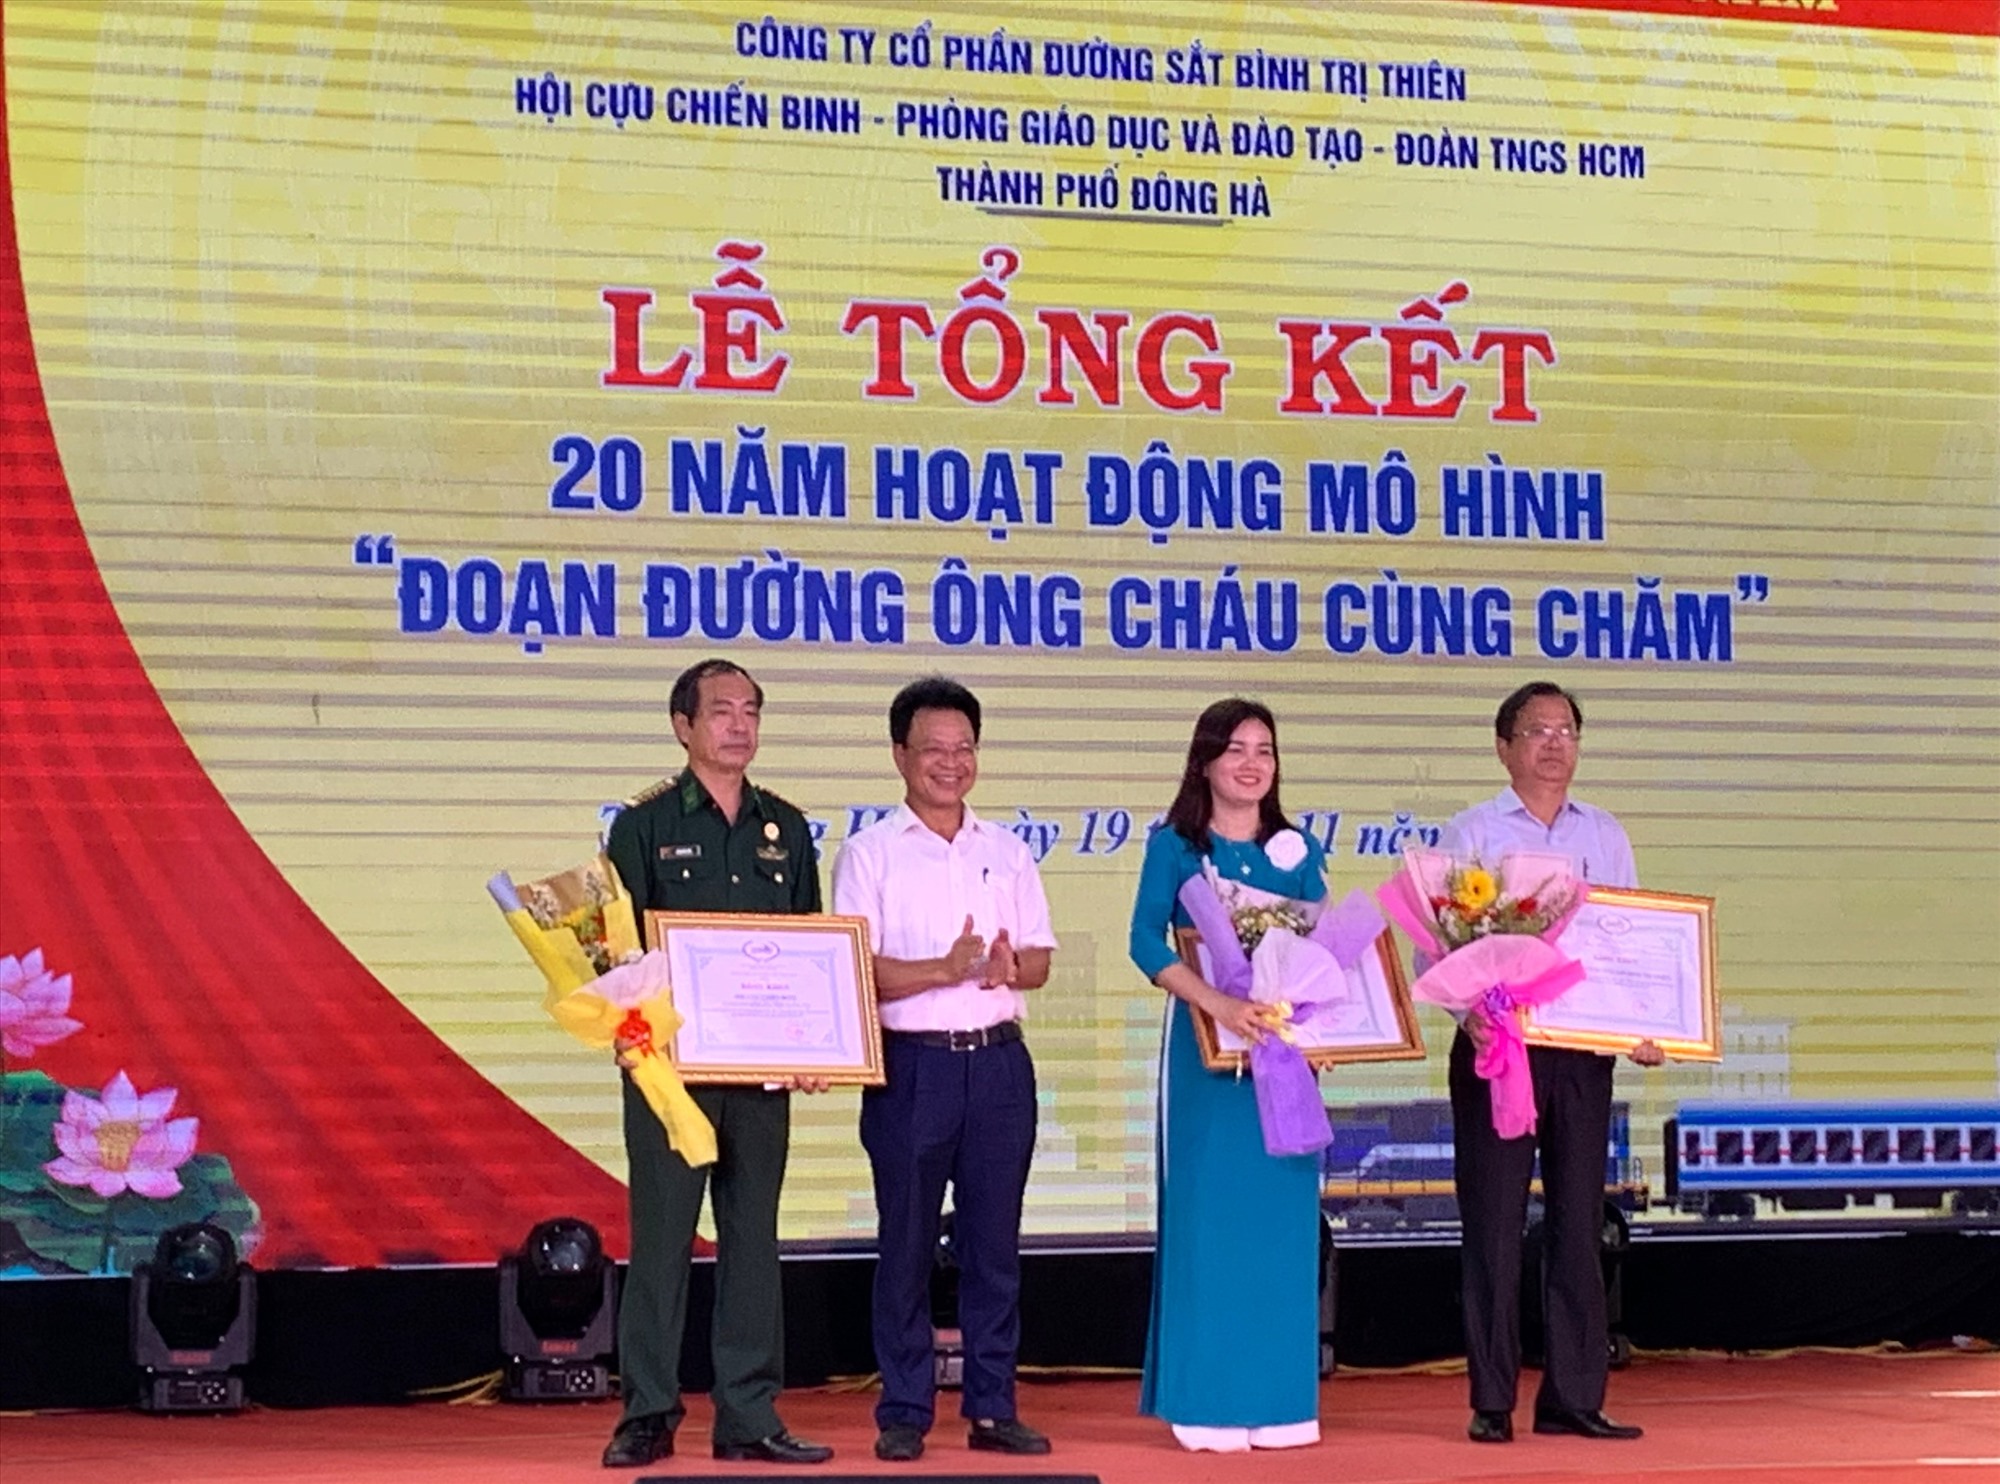 Tổng công ty Đường sắt Việt Nam tặng bằng khen cho các tập thể có nhiều đóng góp xuất sắc trong mô hình “Đoạn đường ông cháu cùng chăm” - Ảnh: NK